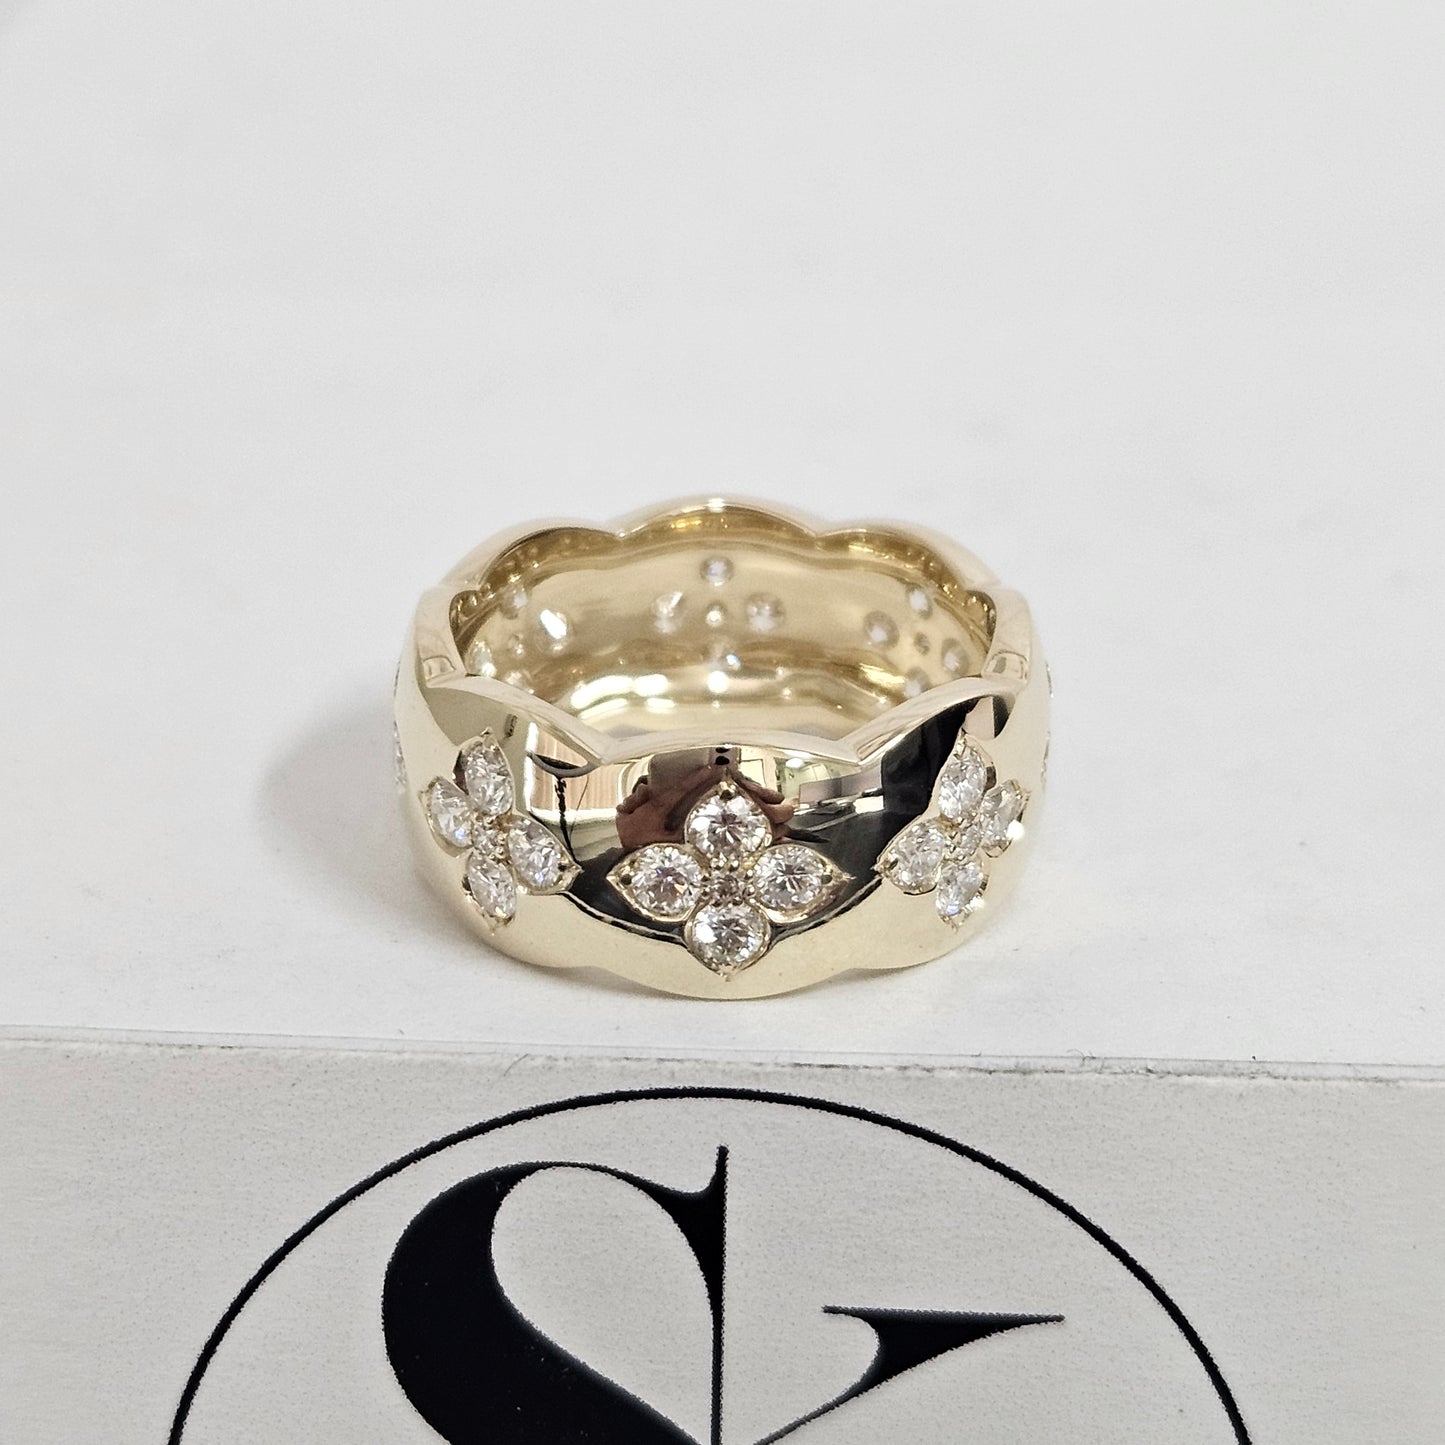 Flower Full Diamond Band / 4K,18K gold Diamond Eternity ring / Flower Natural Diamond Wedding Ring / Anniversary Ring / Gift for her